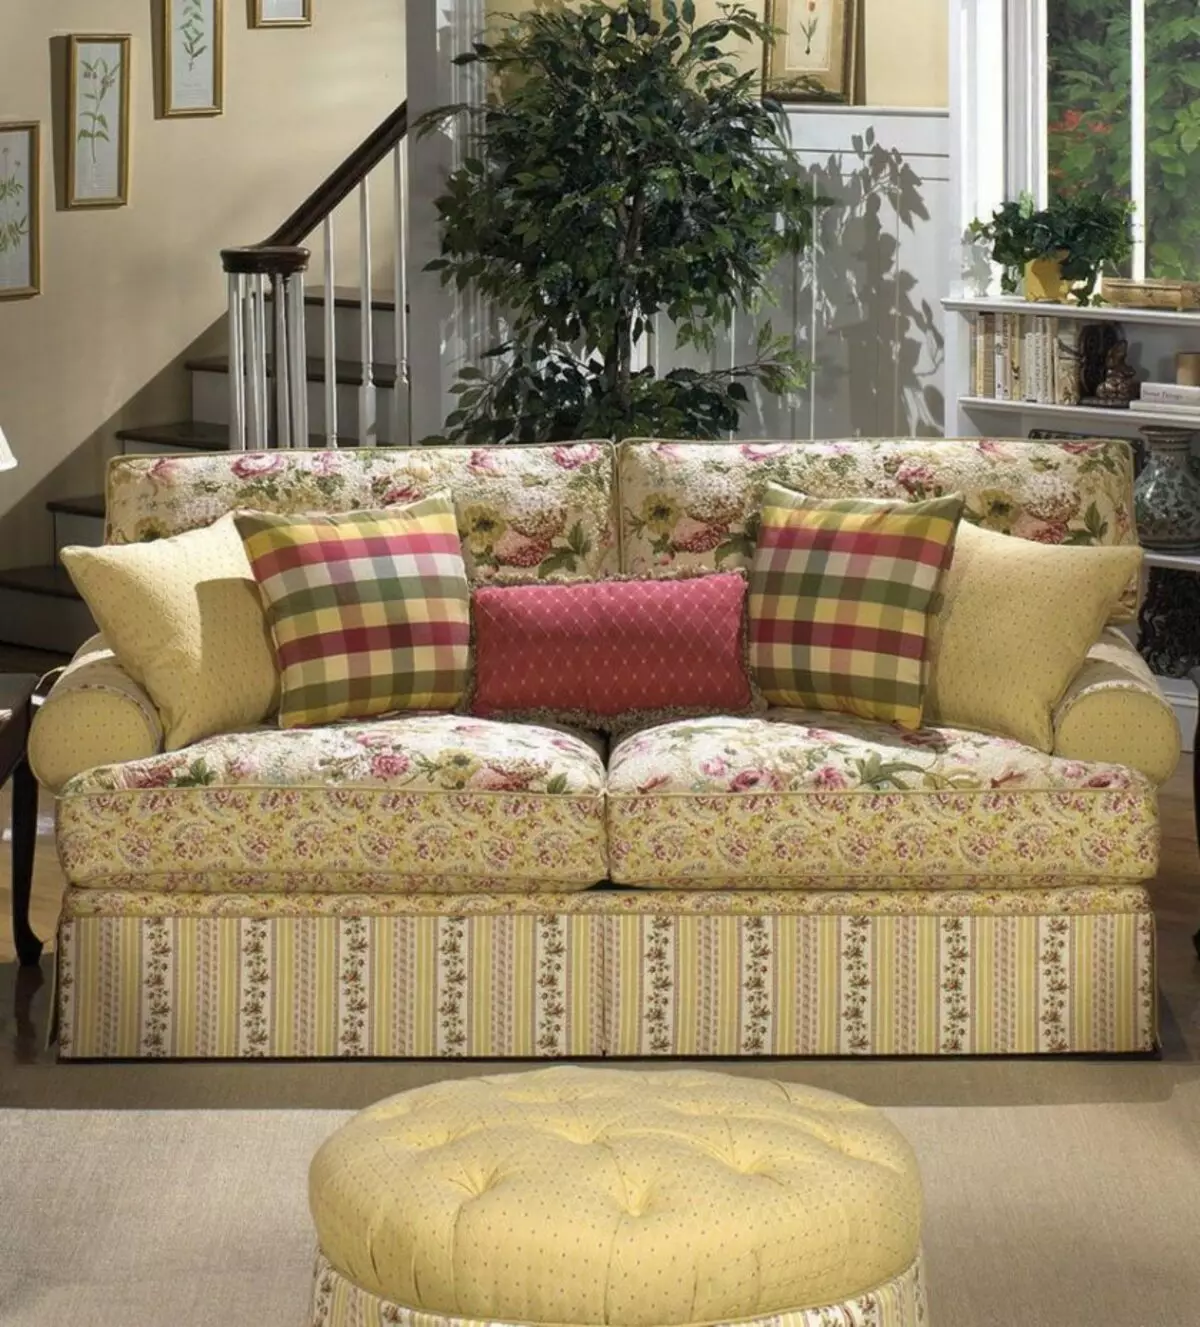 Country Style Sofa: Angular at iba pang mga modelo. Paano upang kunin sa loob? 9216_11